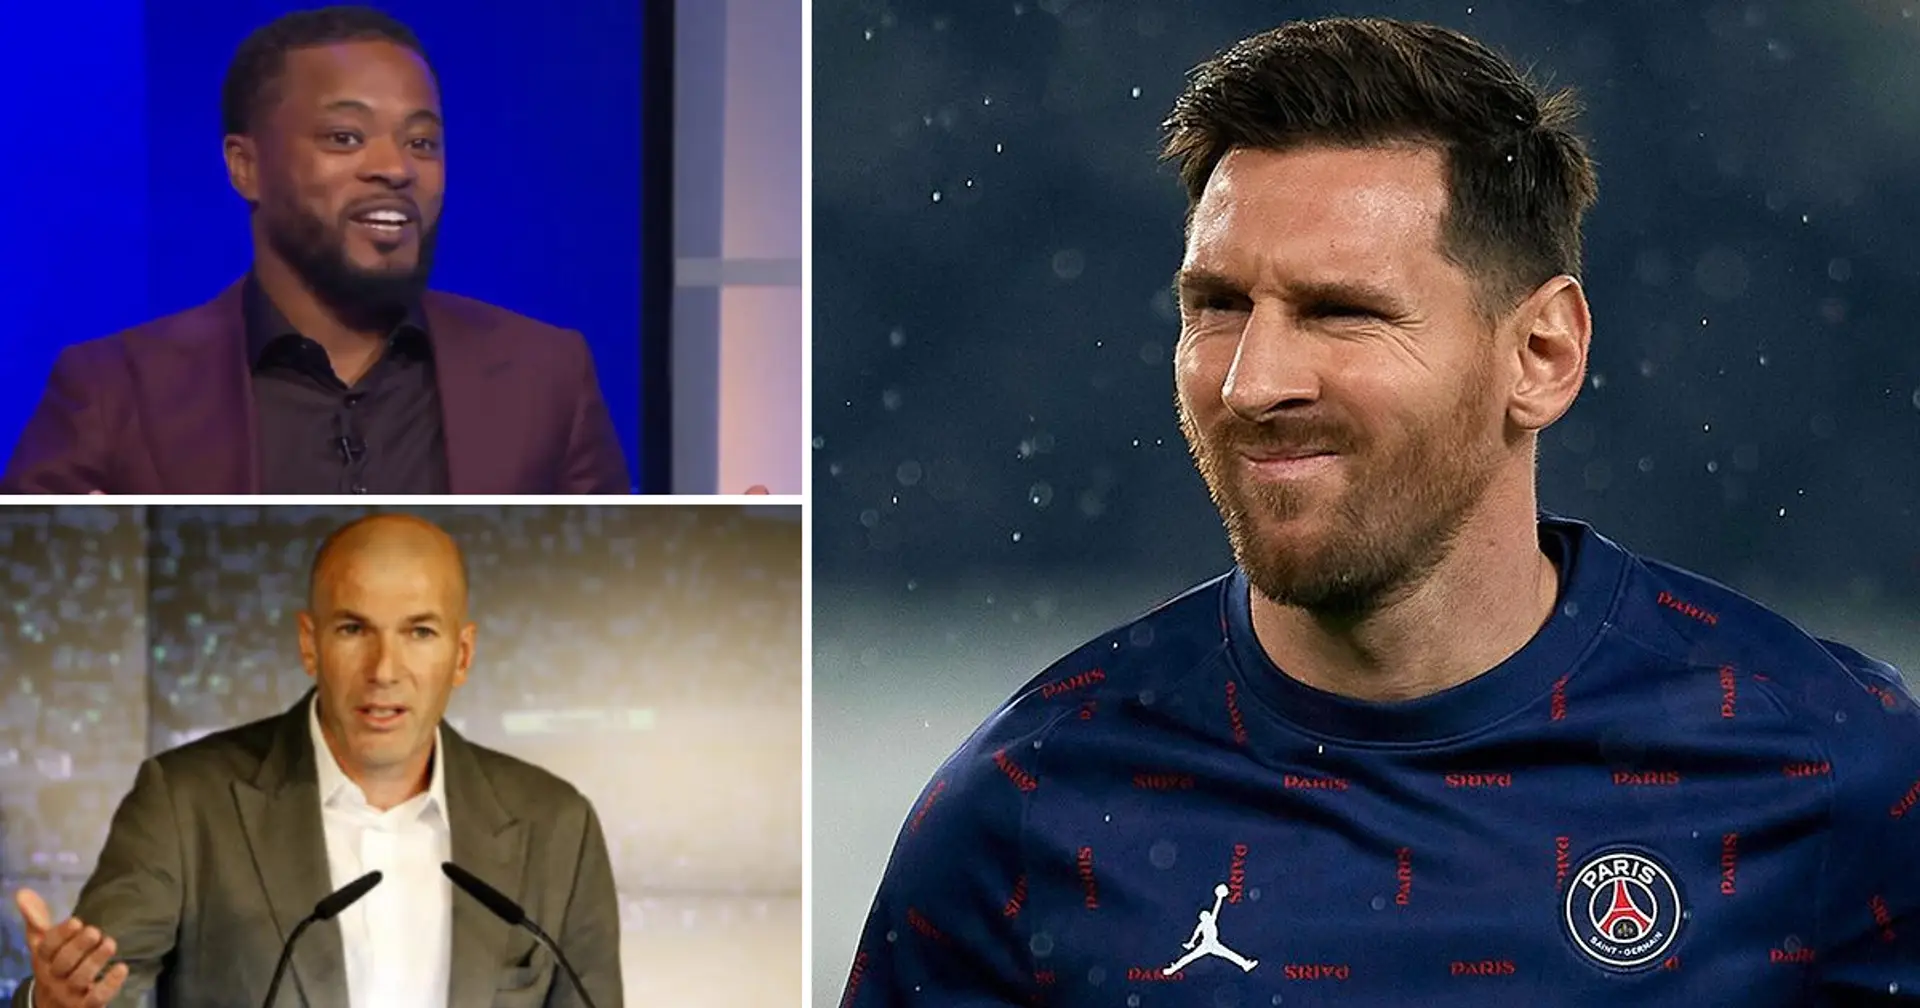 "Il a frappé un joueur" et 3 affirmations les plus ridicules  contre le titre du Ballon d'Or à Messi que nous ayons entendues